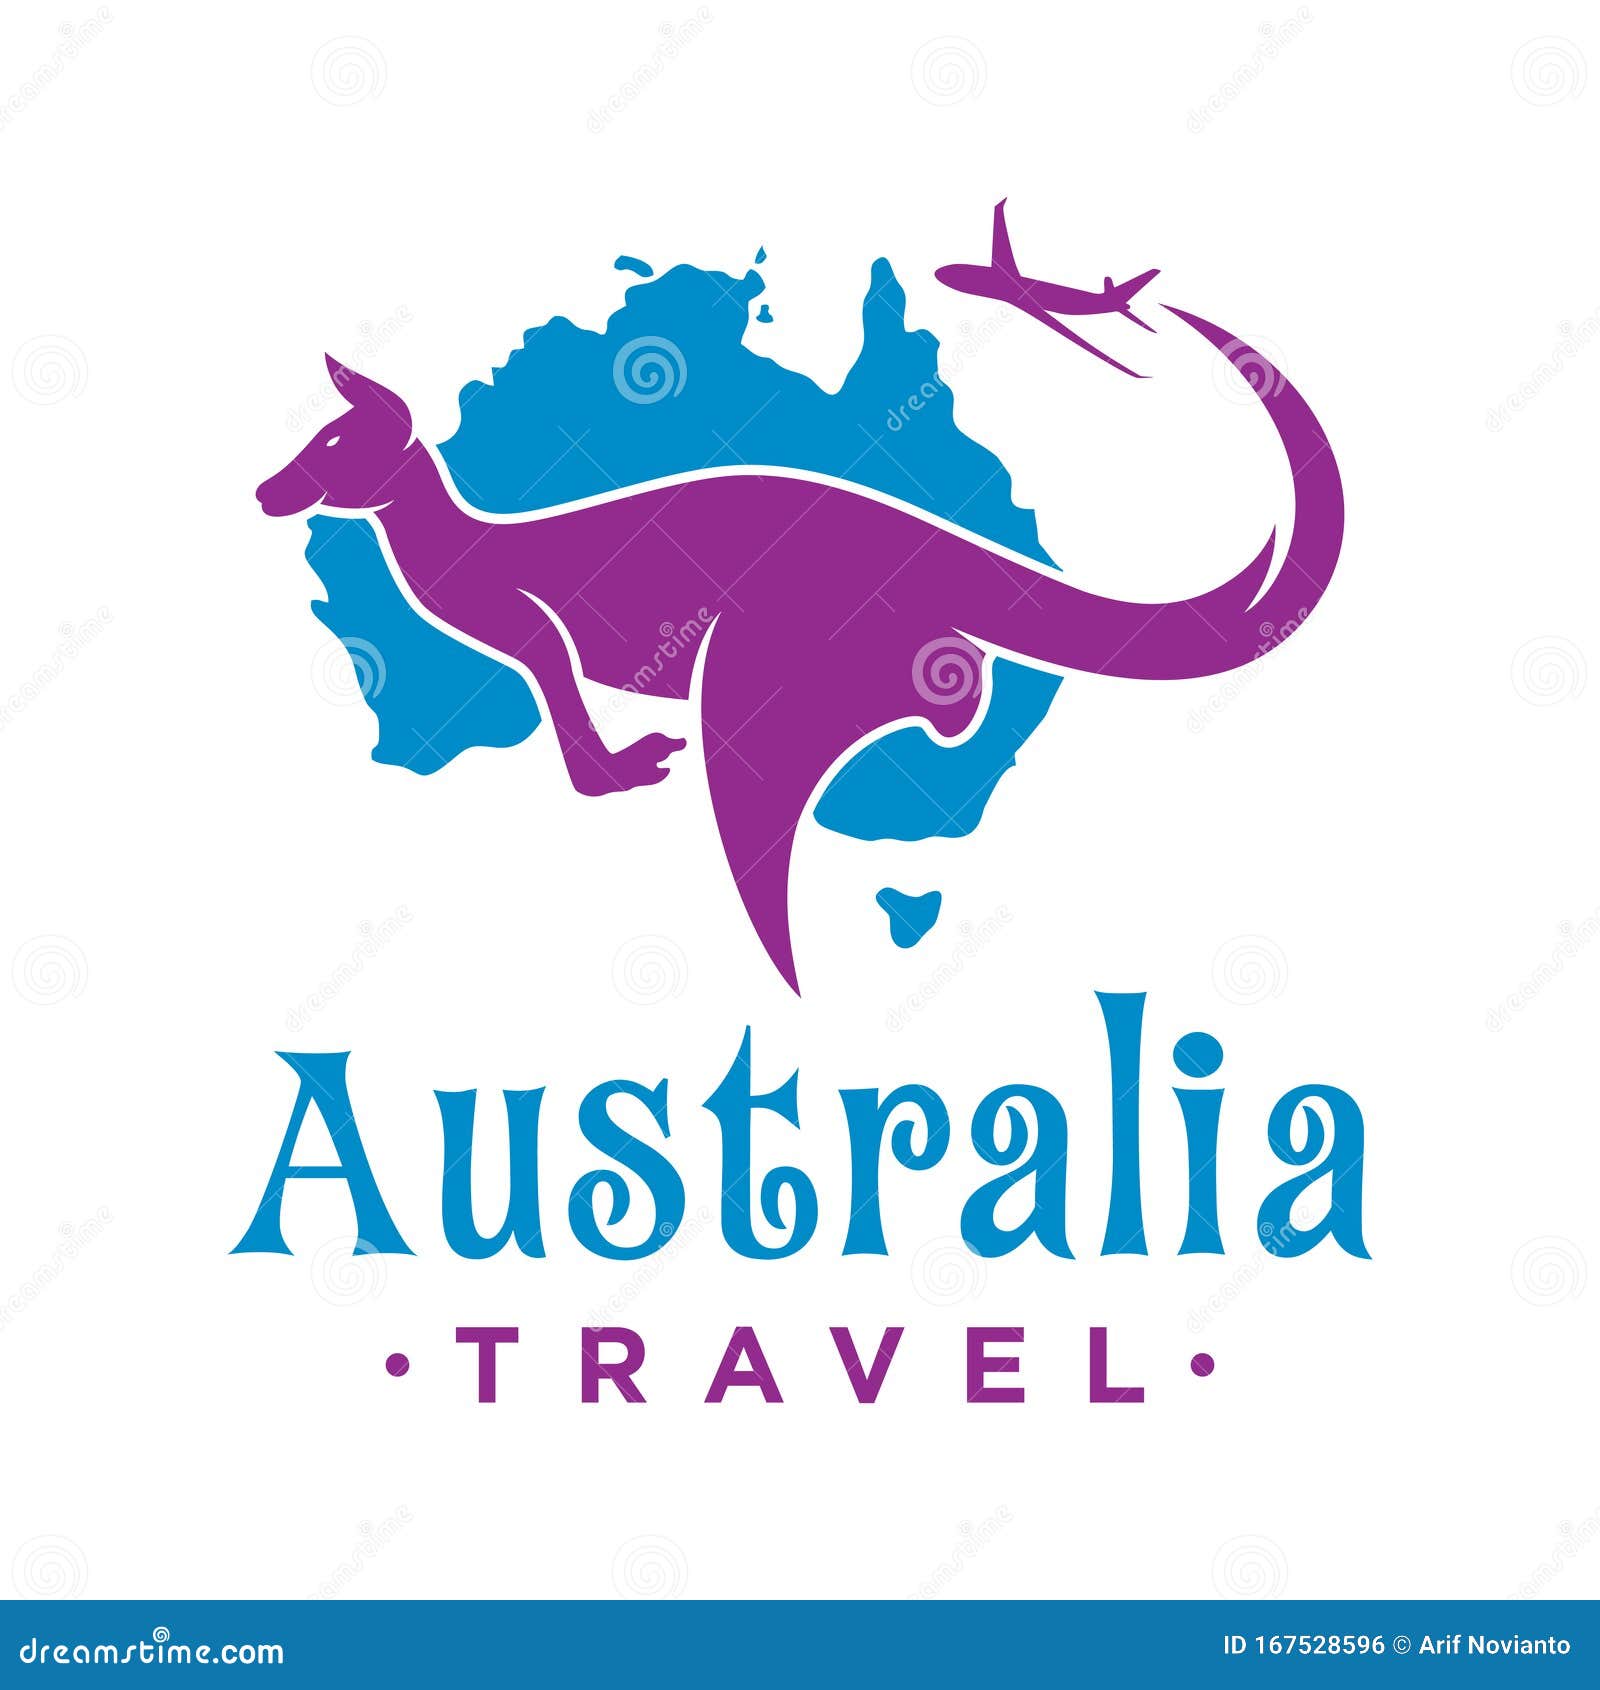 aussie traveller logo